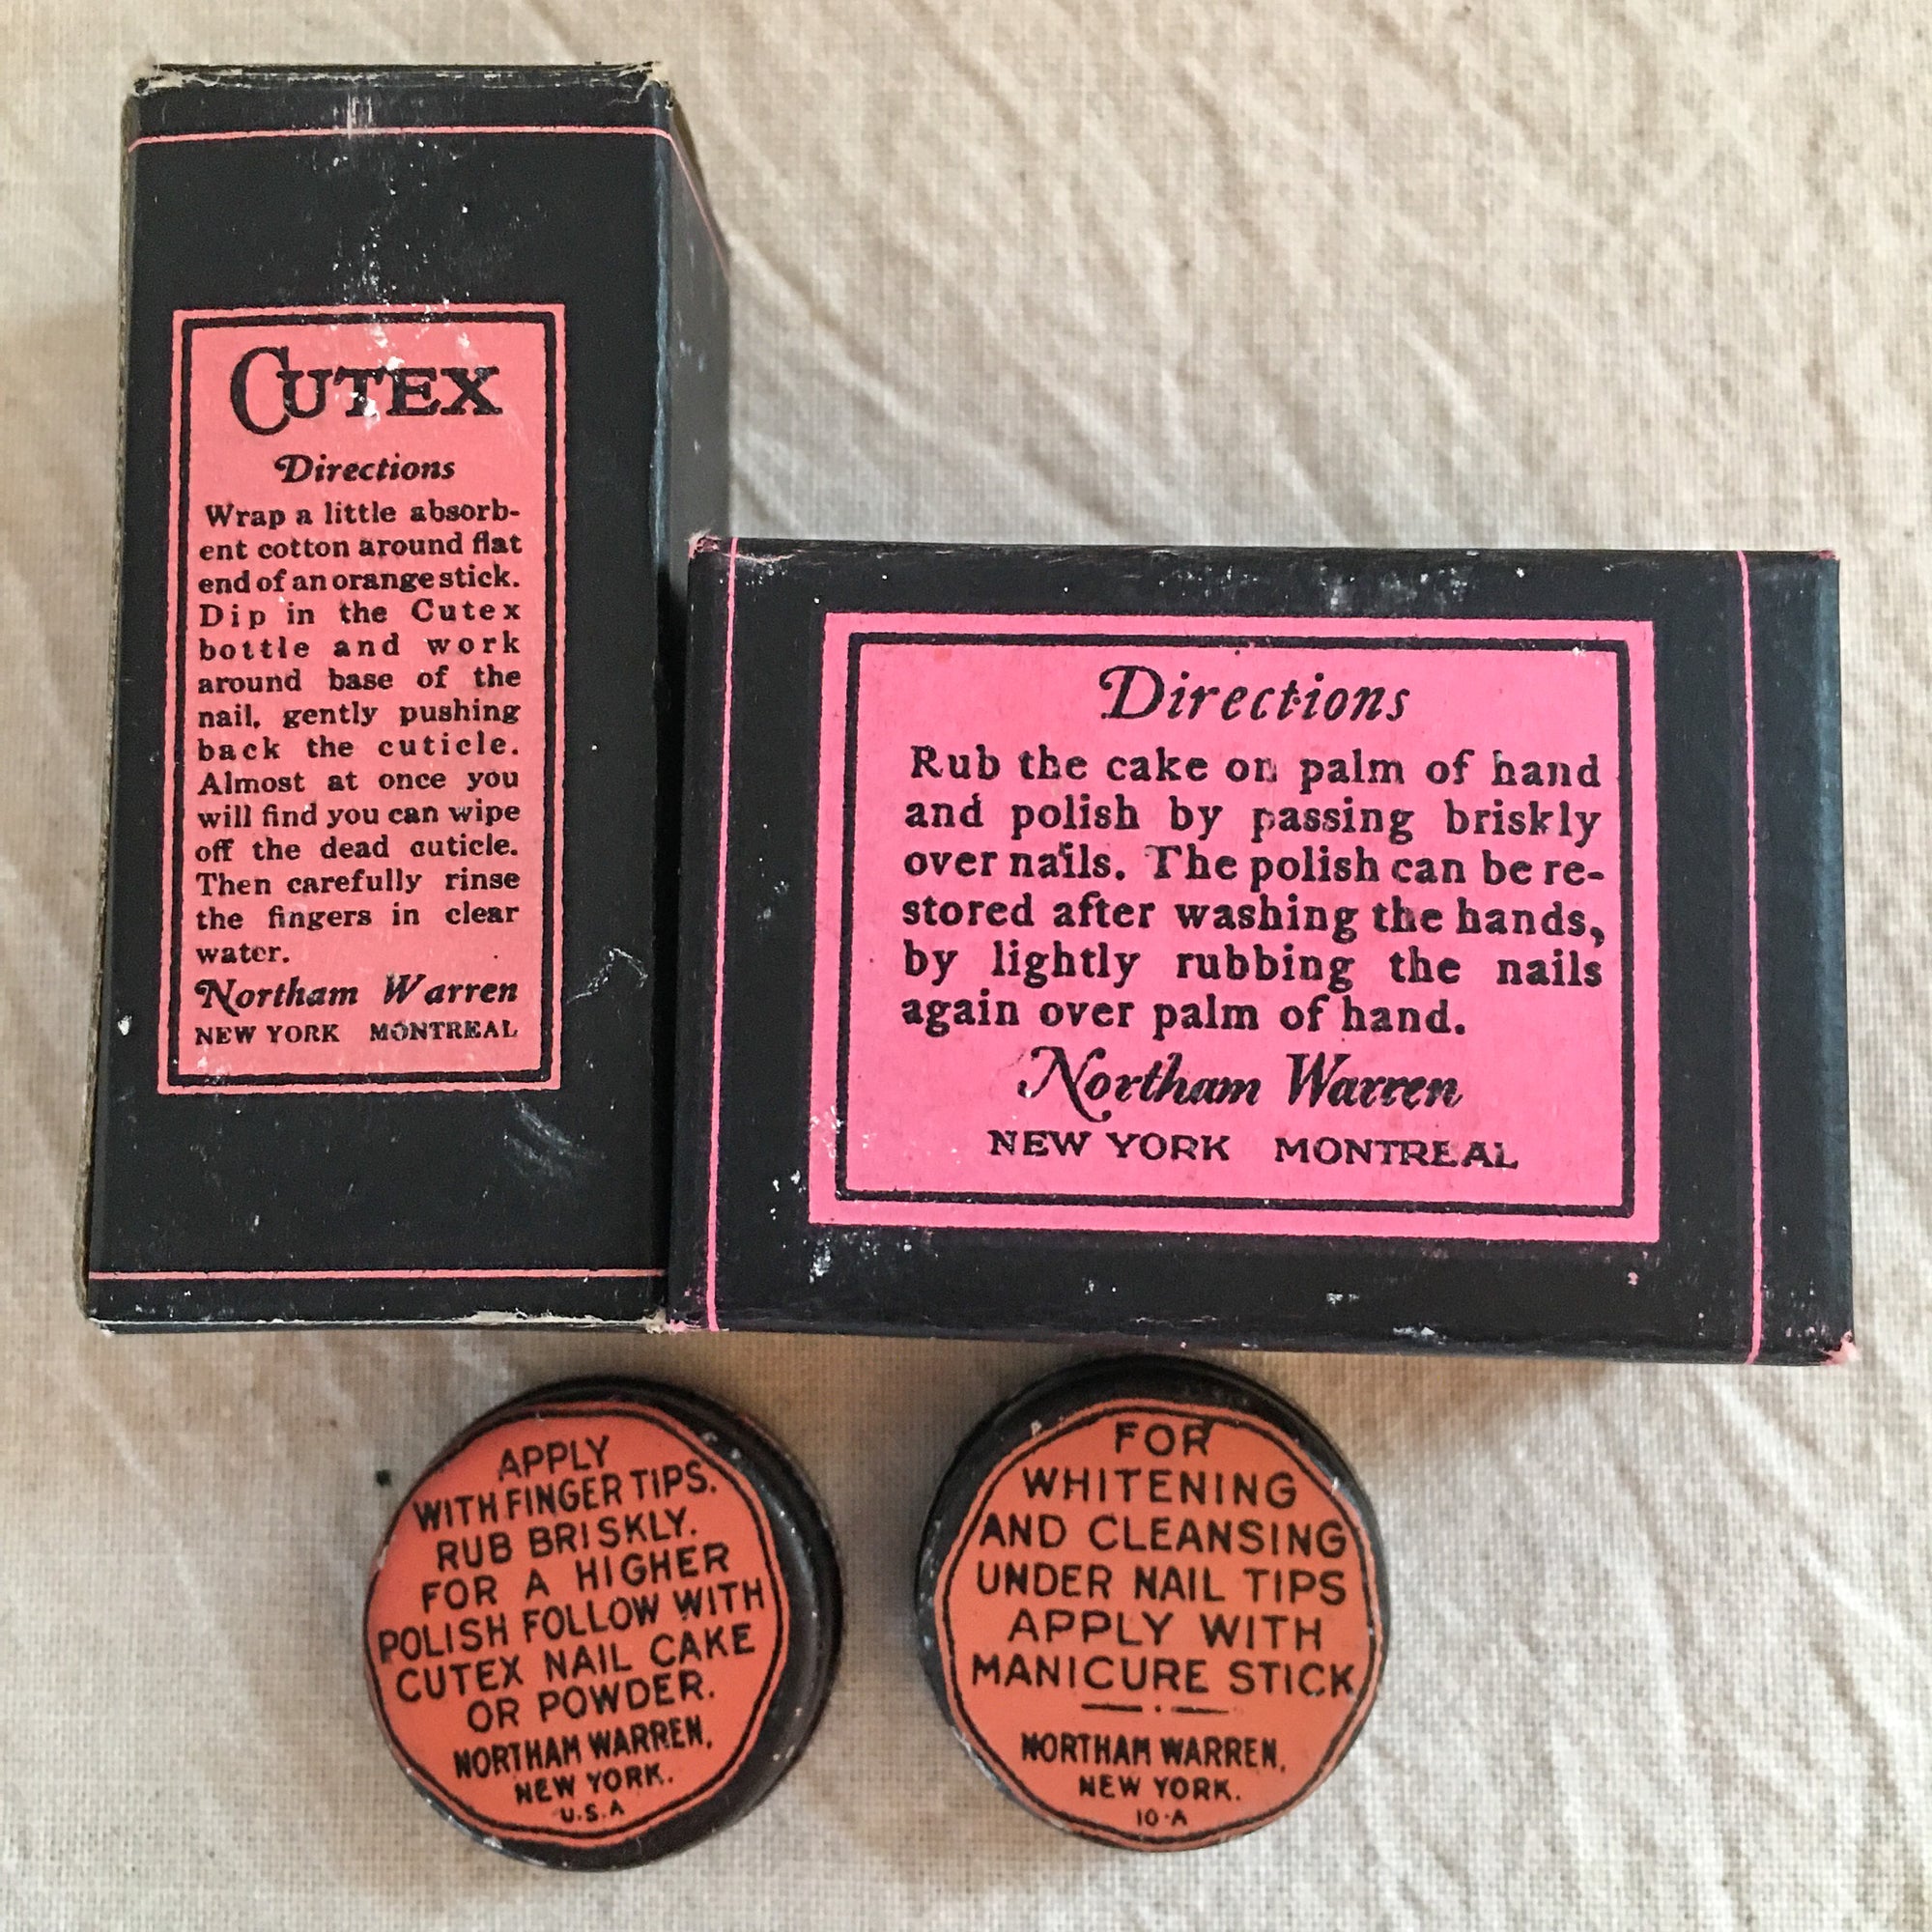 1922 Cutex Compact Manicure Set, Complete, Featuring Geraldine Farrar